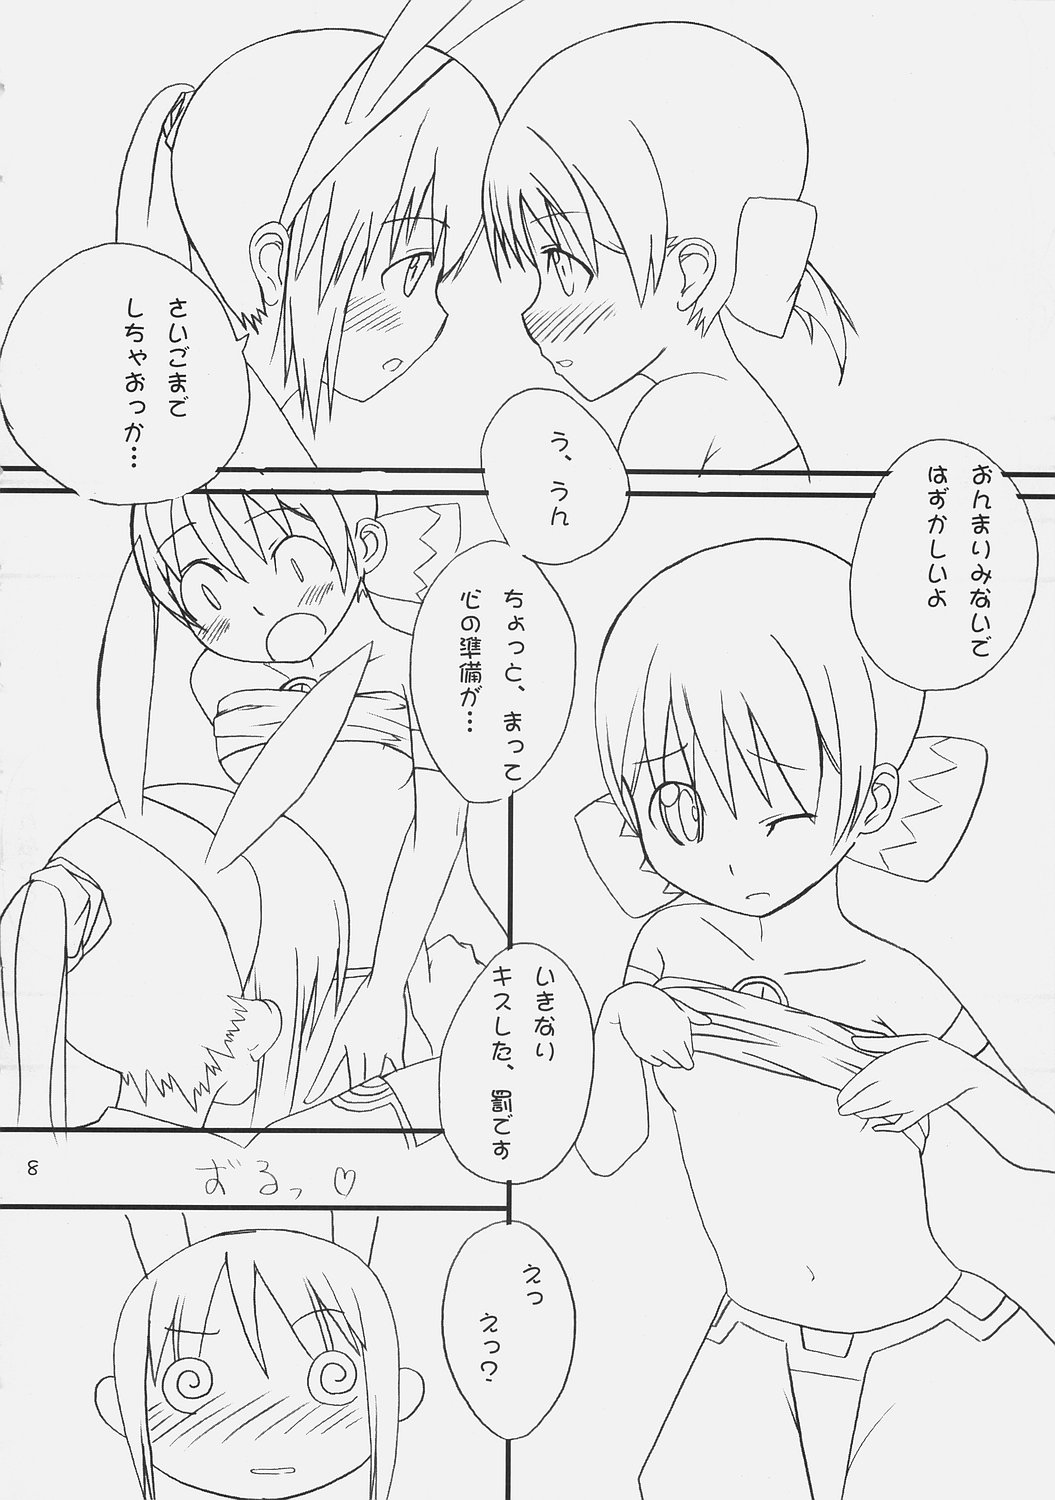 (ComiComi9) [Umi No Sachi Teishoku, Chimaroni?, Fake fur, (Kakifly, Chimaro, Furu)] PanPanPangya (Sukatto Golf Pangya) page 7 full